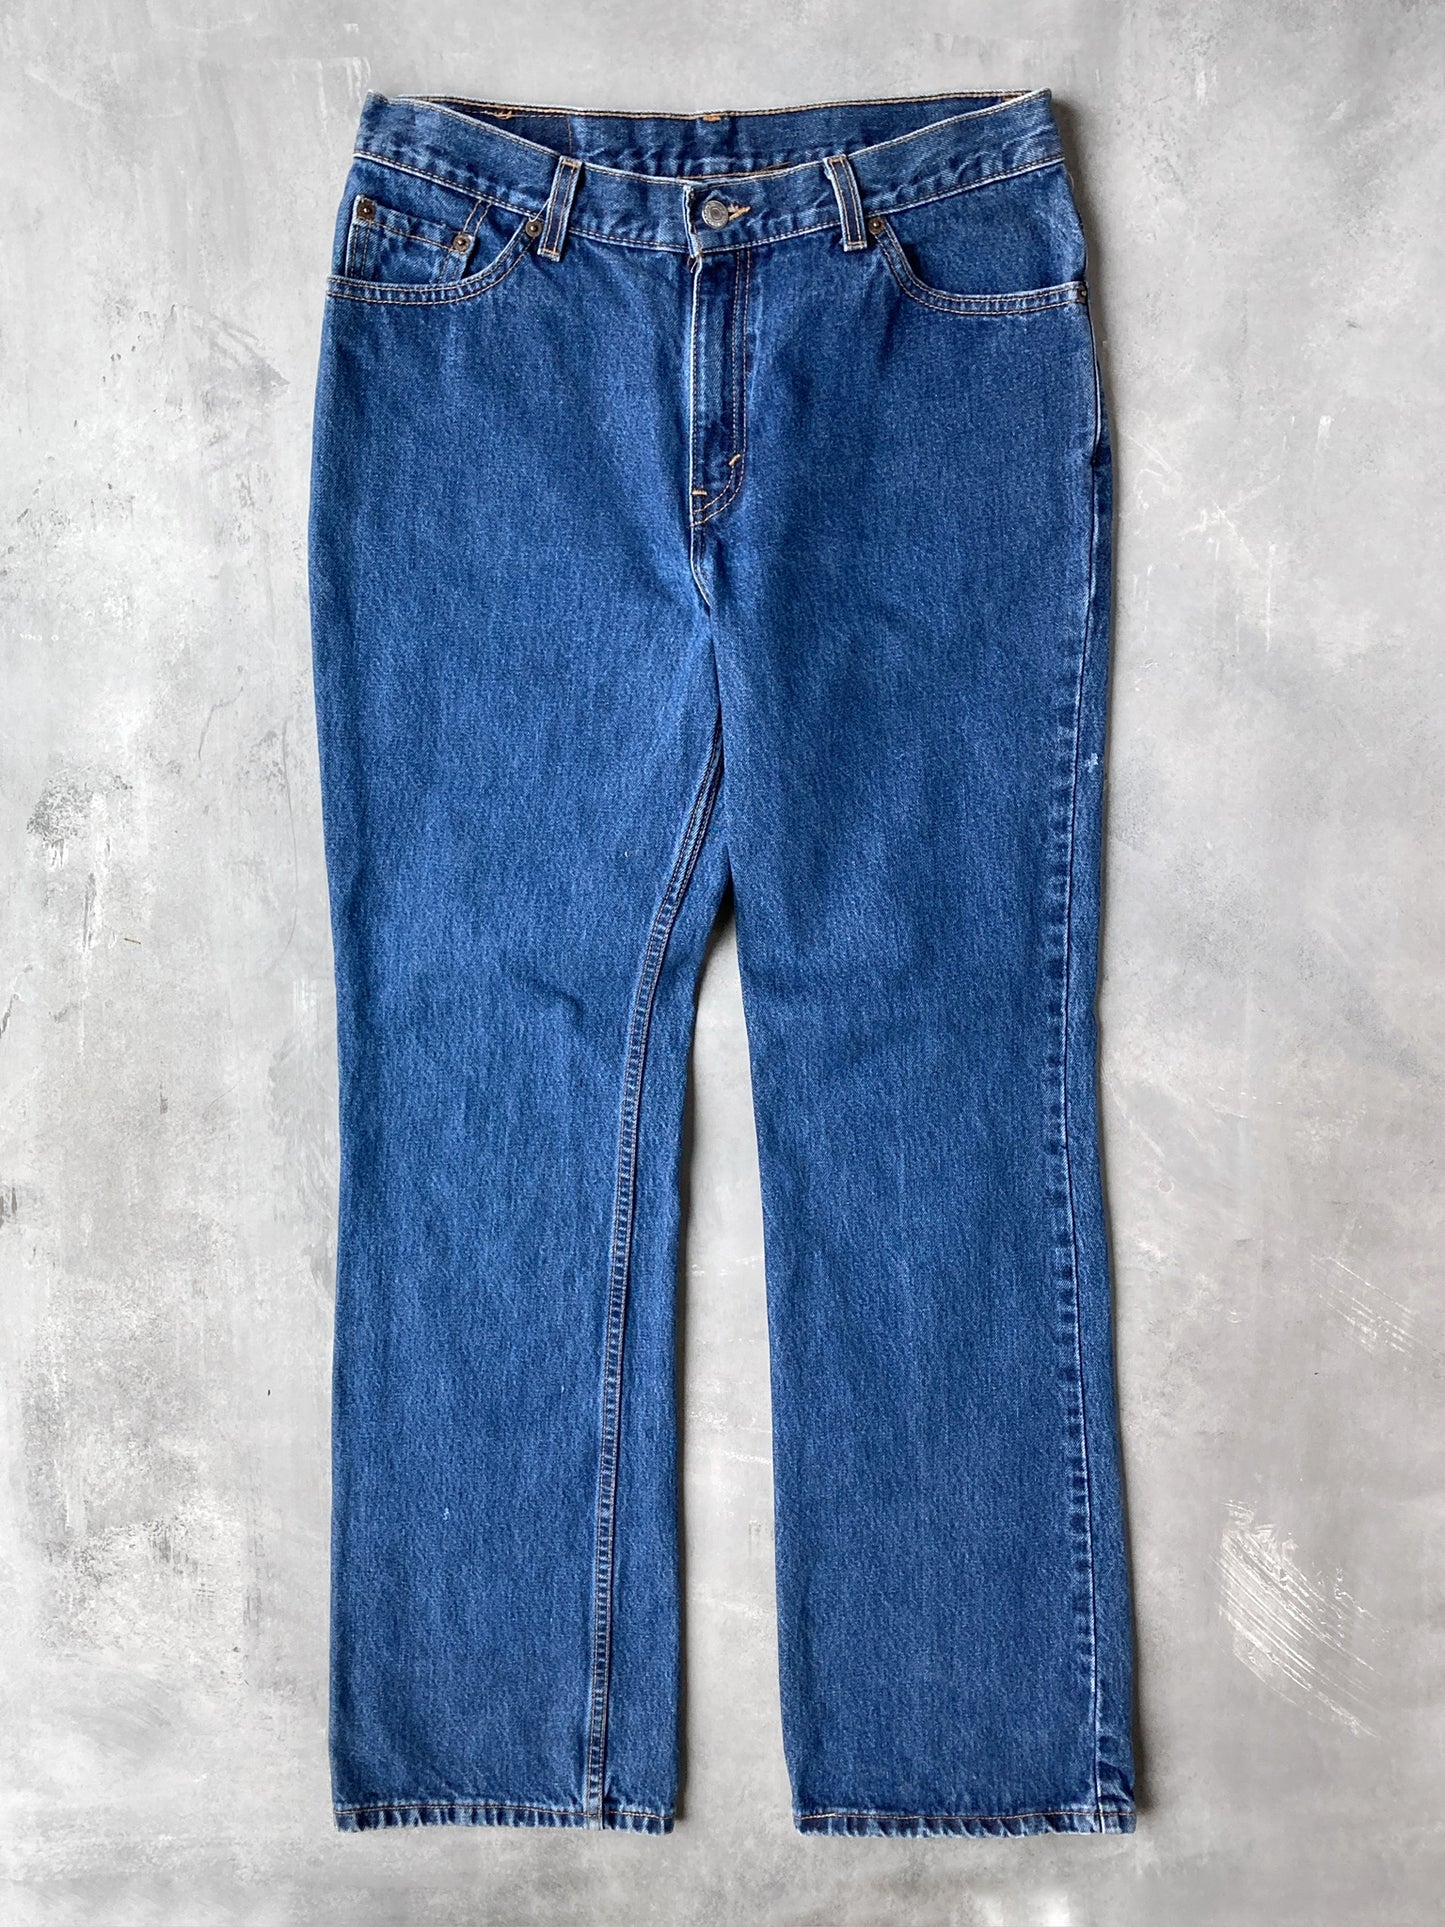 Levi's 517 Boot Cut Jeans '00 - 12